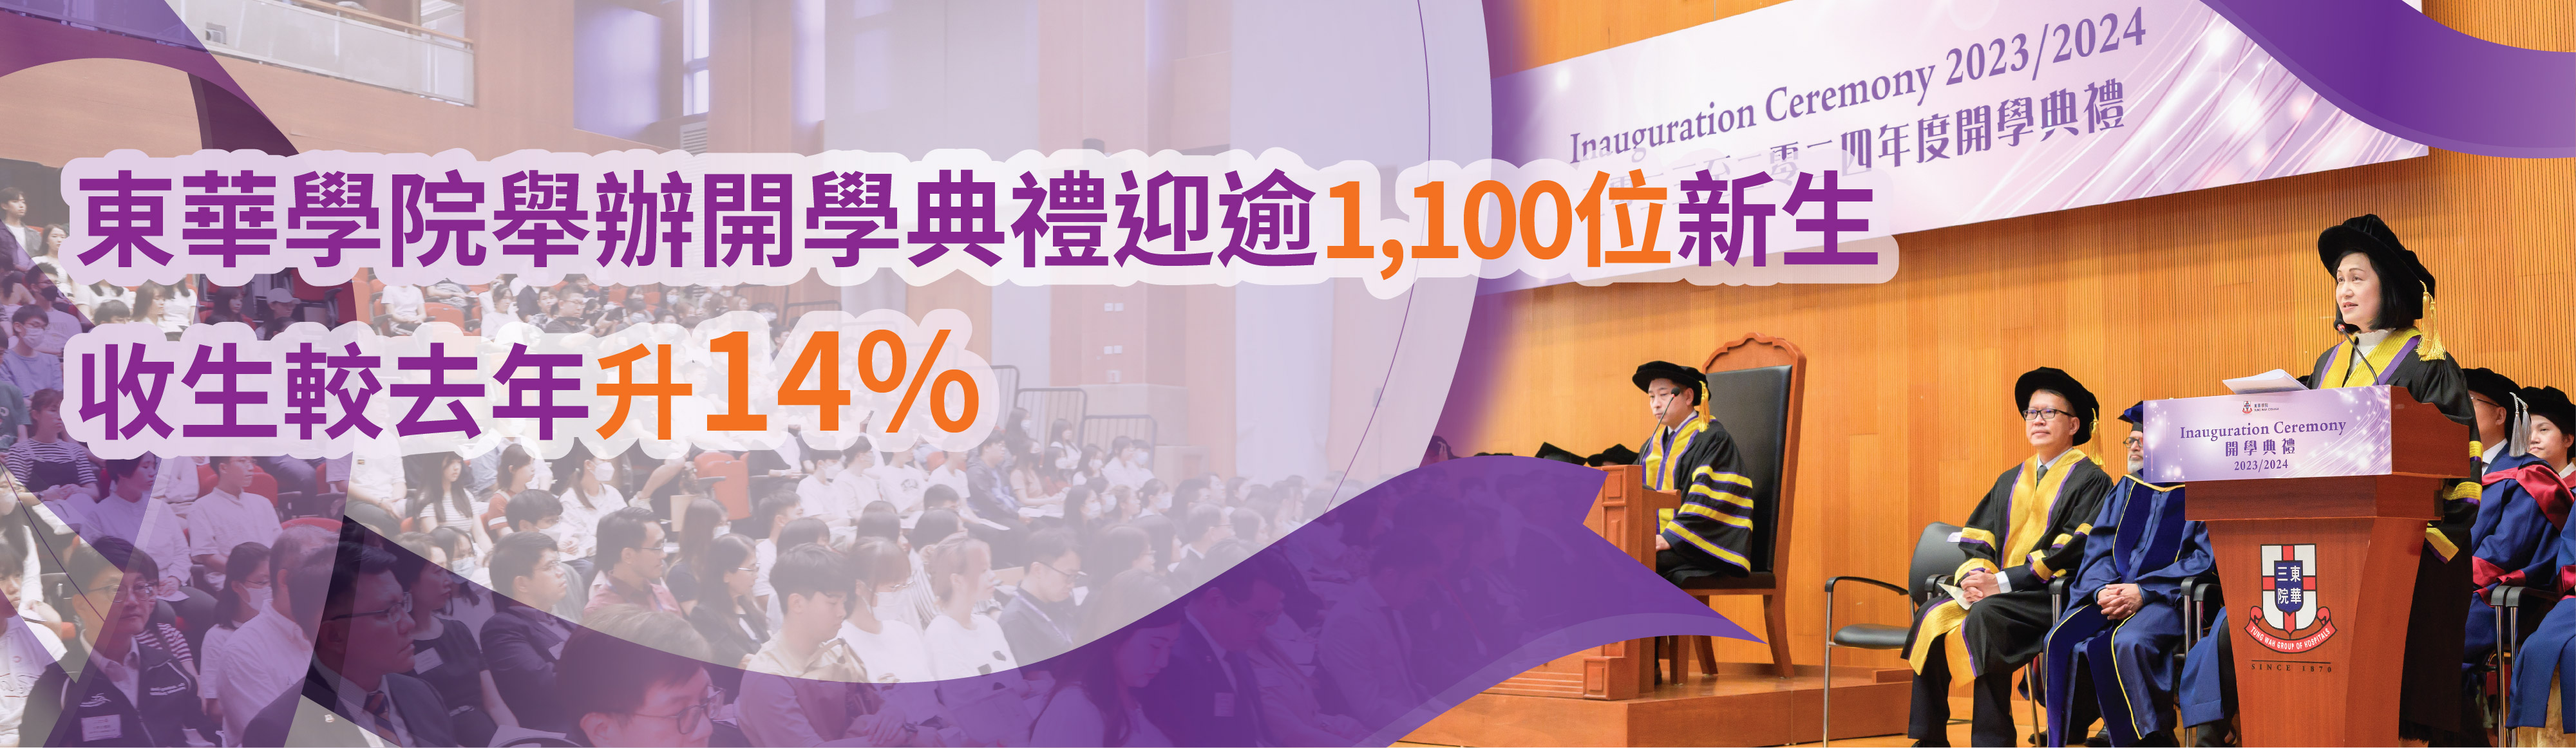 東華學院舉辦開學典禮迎逾千位新生 收生較去年升14%